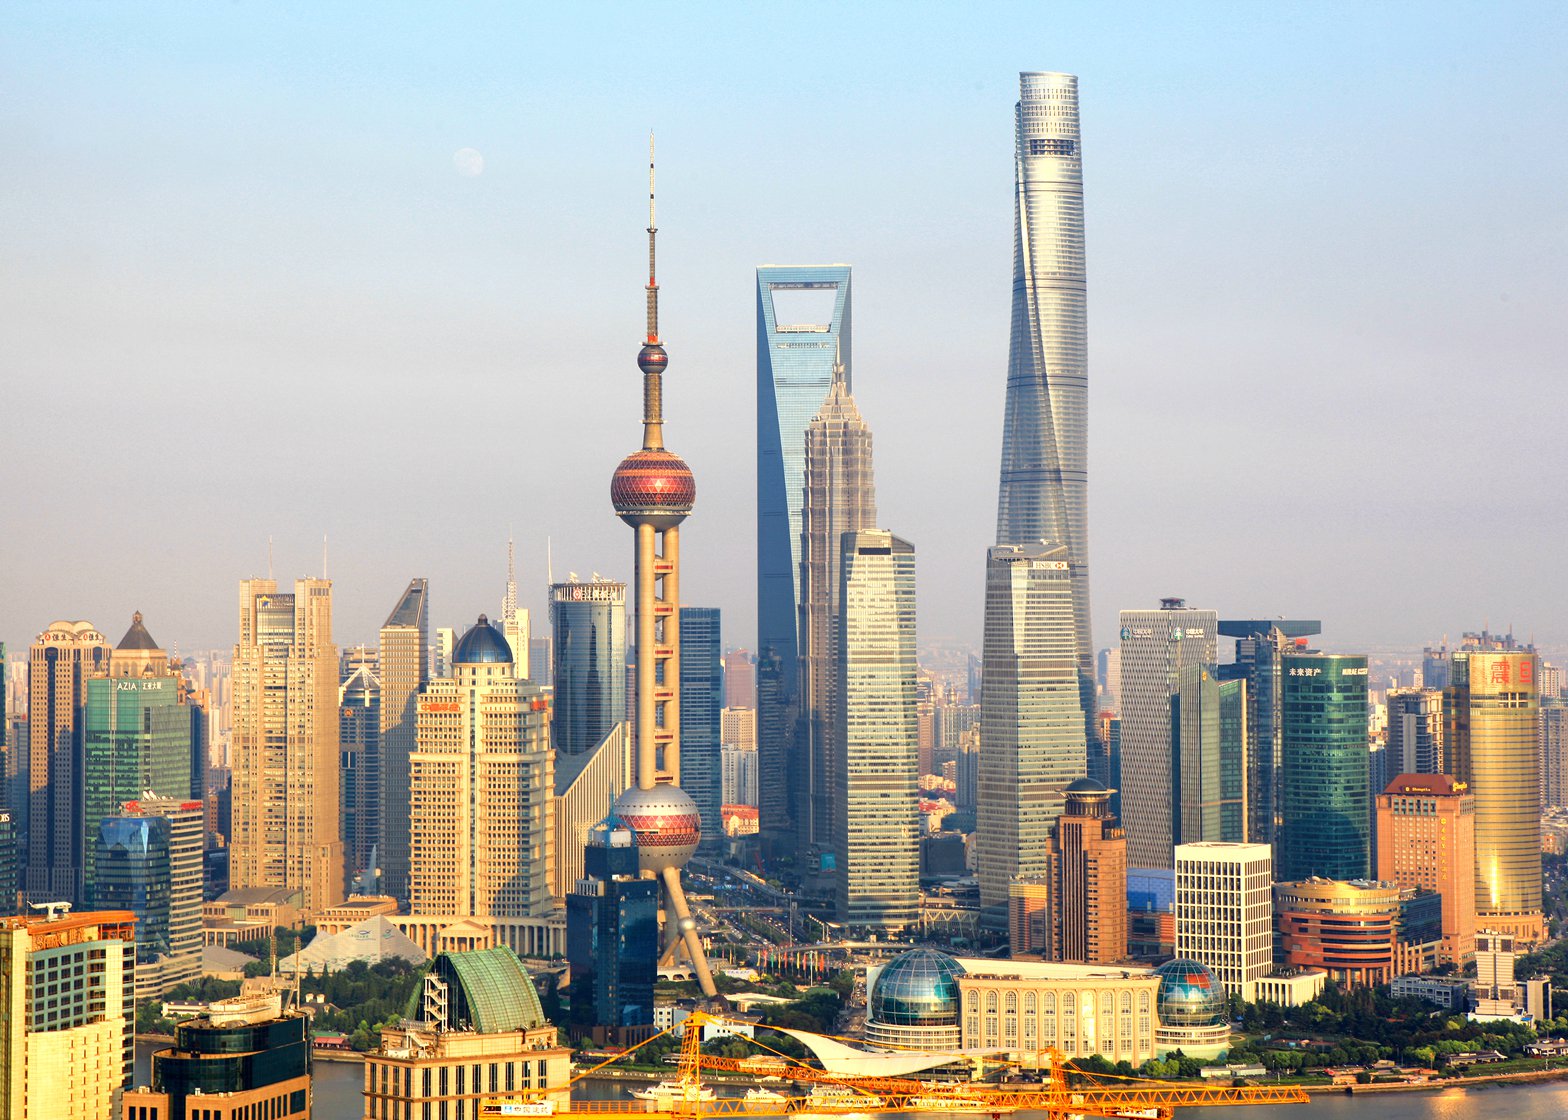 Shanghai-Tower_Gensler_dezeen_ban